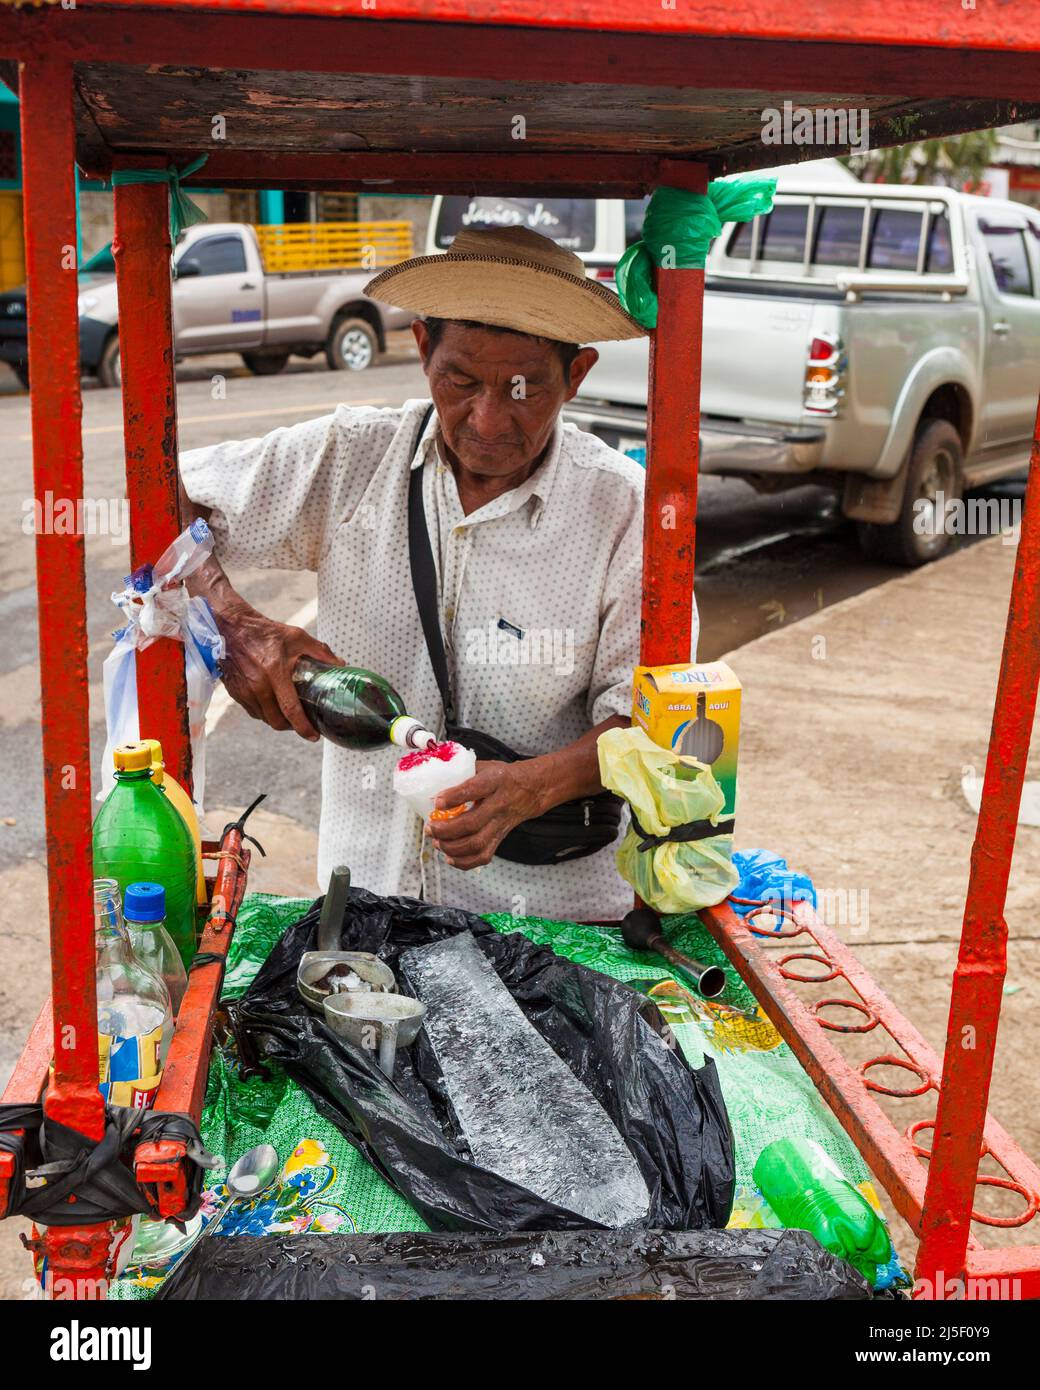 L'uomo Panamaniano sta facendo una bevanda schiacciante chiamata Raspao nel centro della città OCU, provincia di Herrera, Repubblica di Panama, America Centrale. Foto Stock